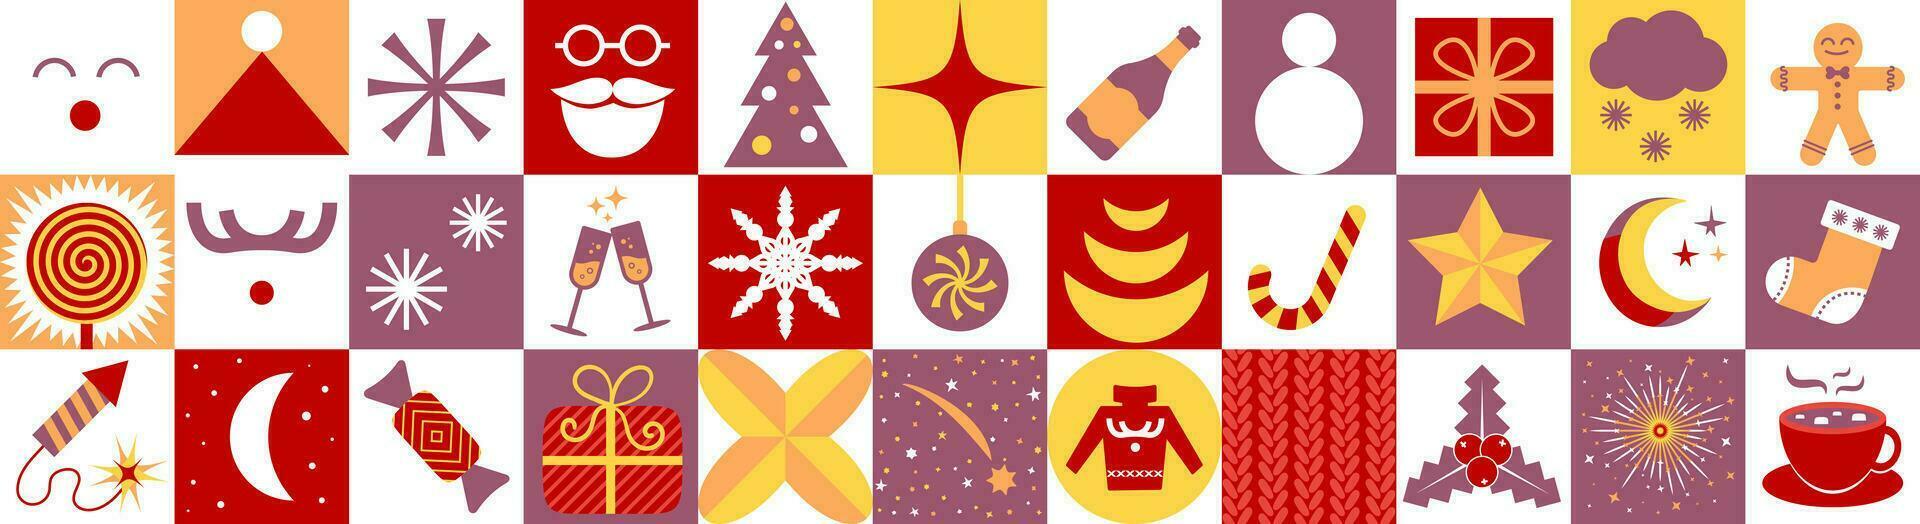 modern jul första advent kalender mall. en uppsättning av enkel jul element utan datum i retro platt stil. uppsättning av ny år symboler. ren, jul träd, gåva, kakao kopp, röd Tröja etc. vektor